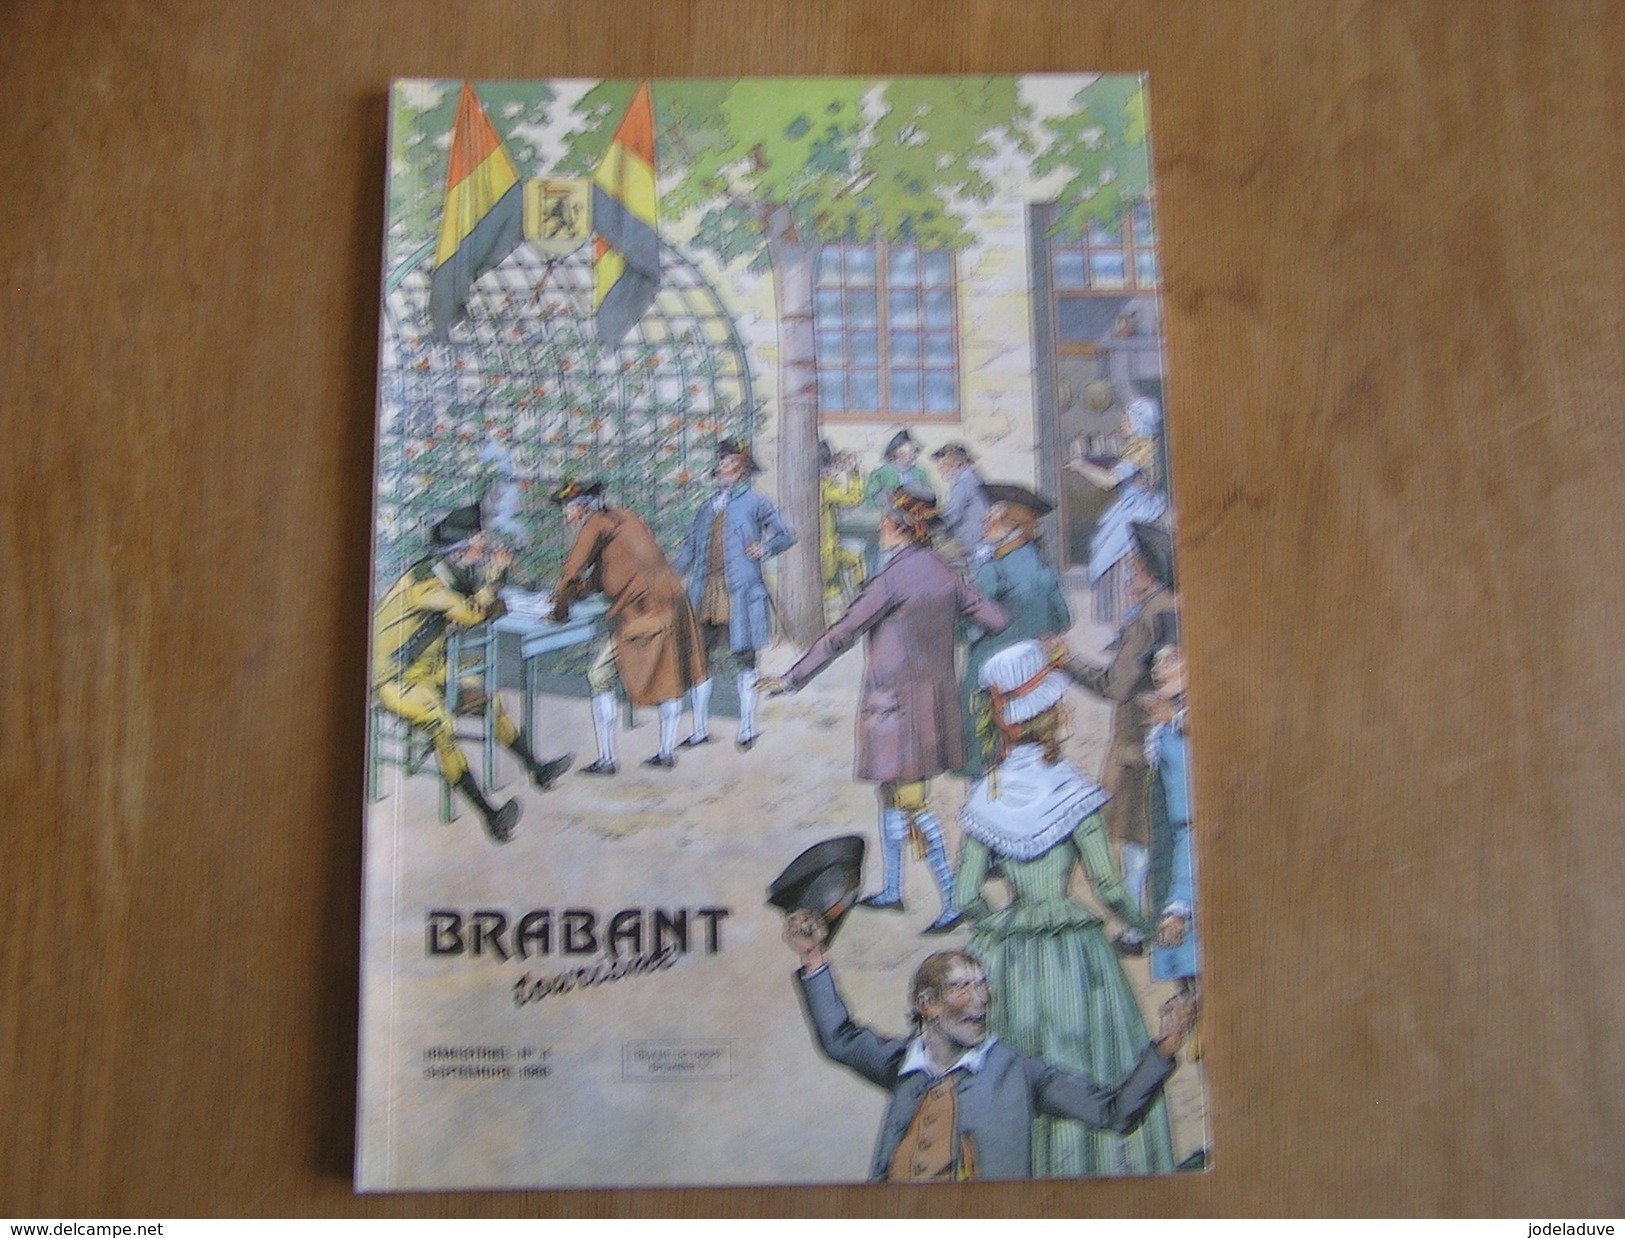 BRABANT Revue N° 4 1989 Régionalisme Brabant Wallon Sablon Napoléon Ramillies Bistrot Bruxelles Saint Josse Saint Géry - België